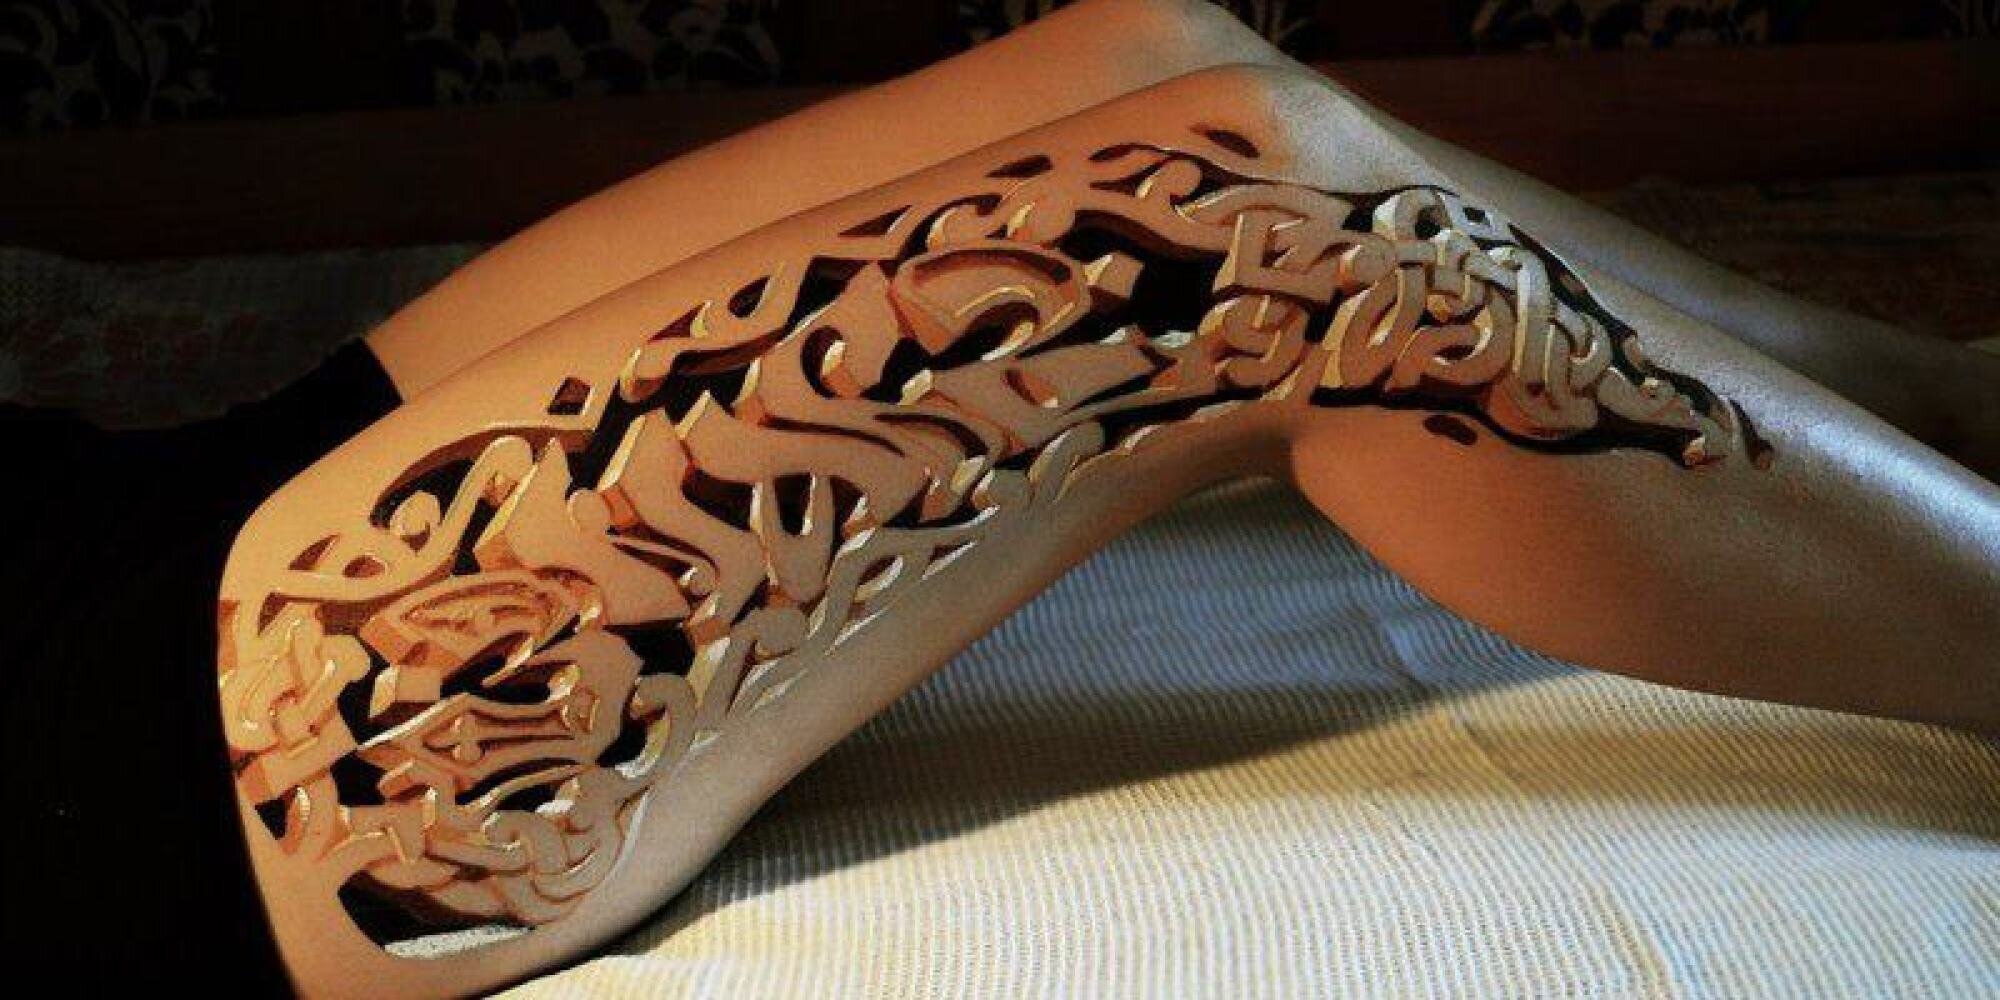 Wood style leg tattoo | Best 3d tattoos, 3d tattoo, Incredible tattoos